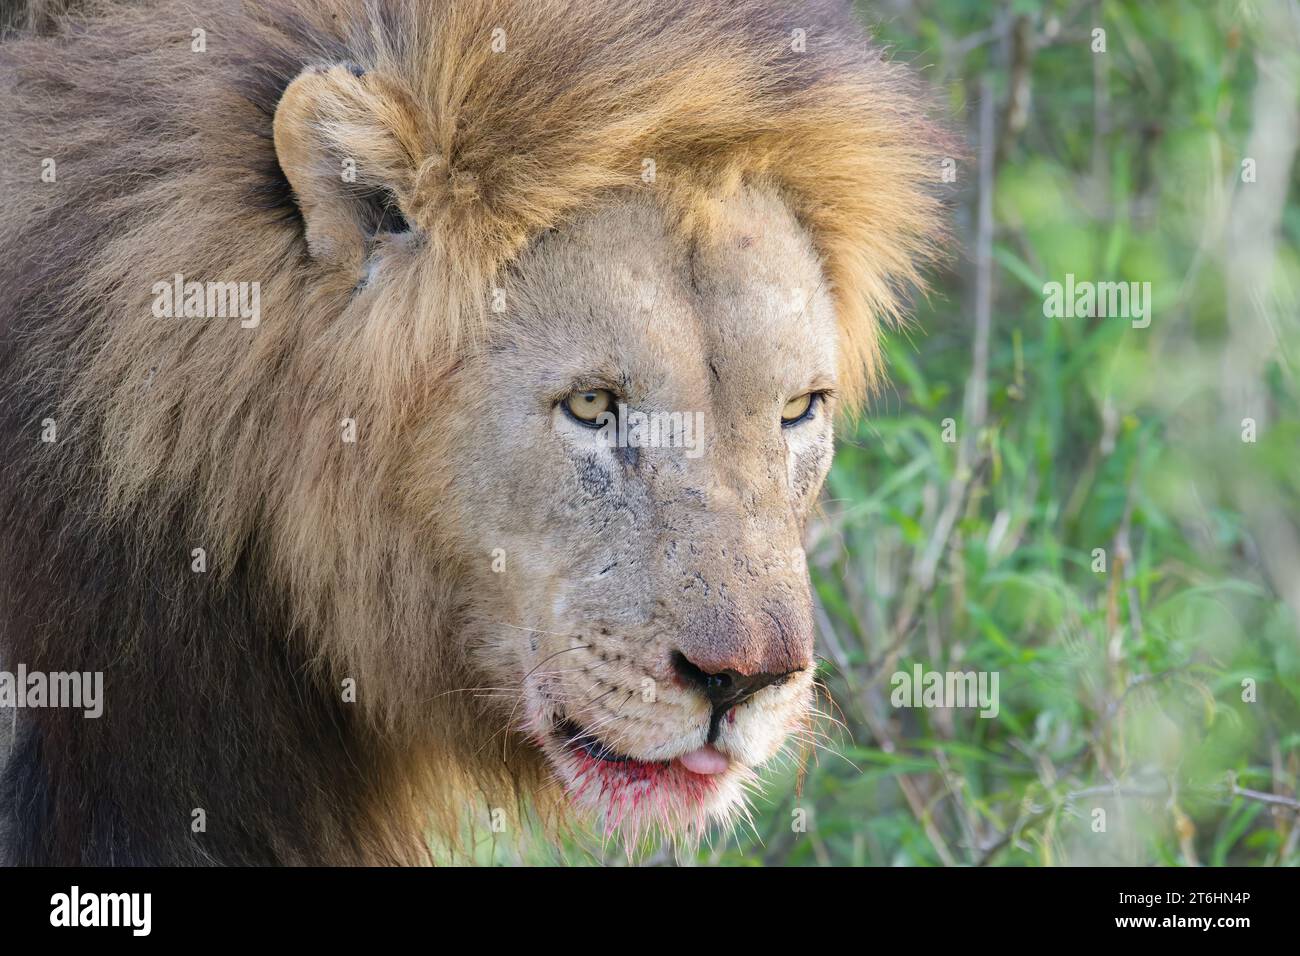 Portrait d'un lion mâle (Panthera leo), province du Kwazulu Natal, Afrique du Sud Banque D'Images